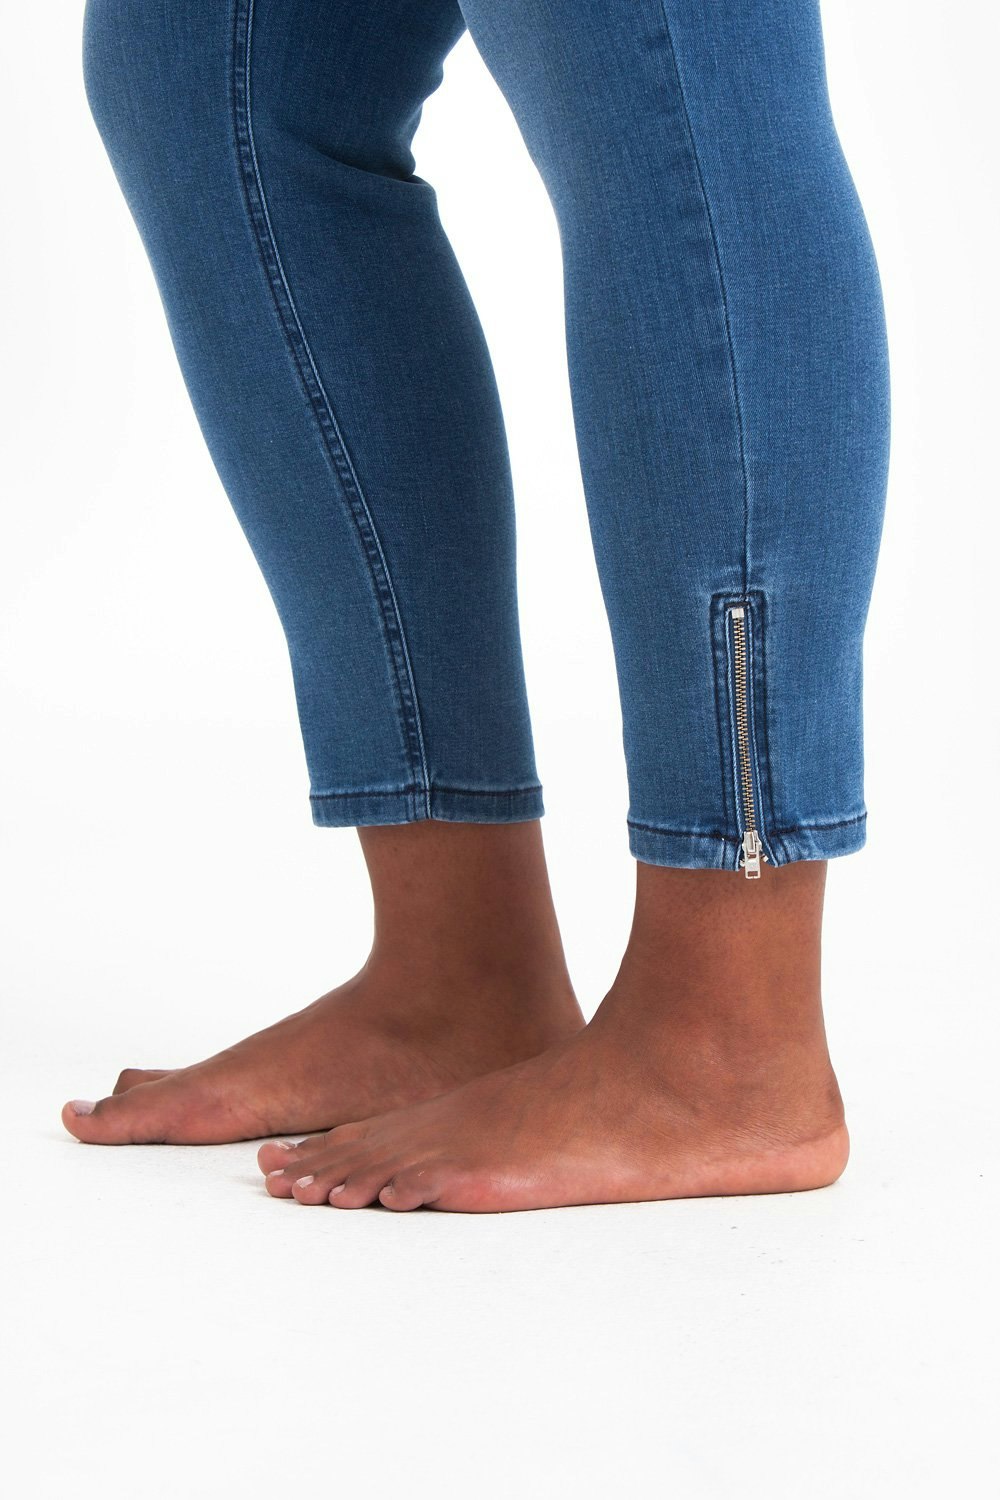 Power zip jeans denim